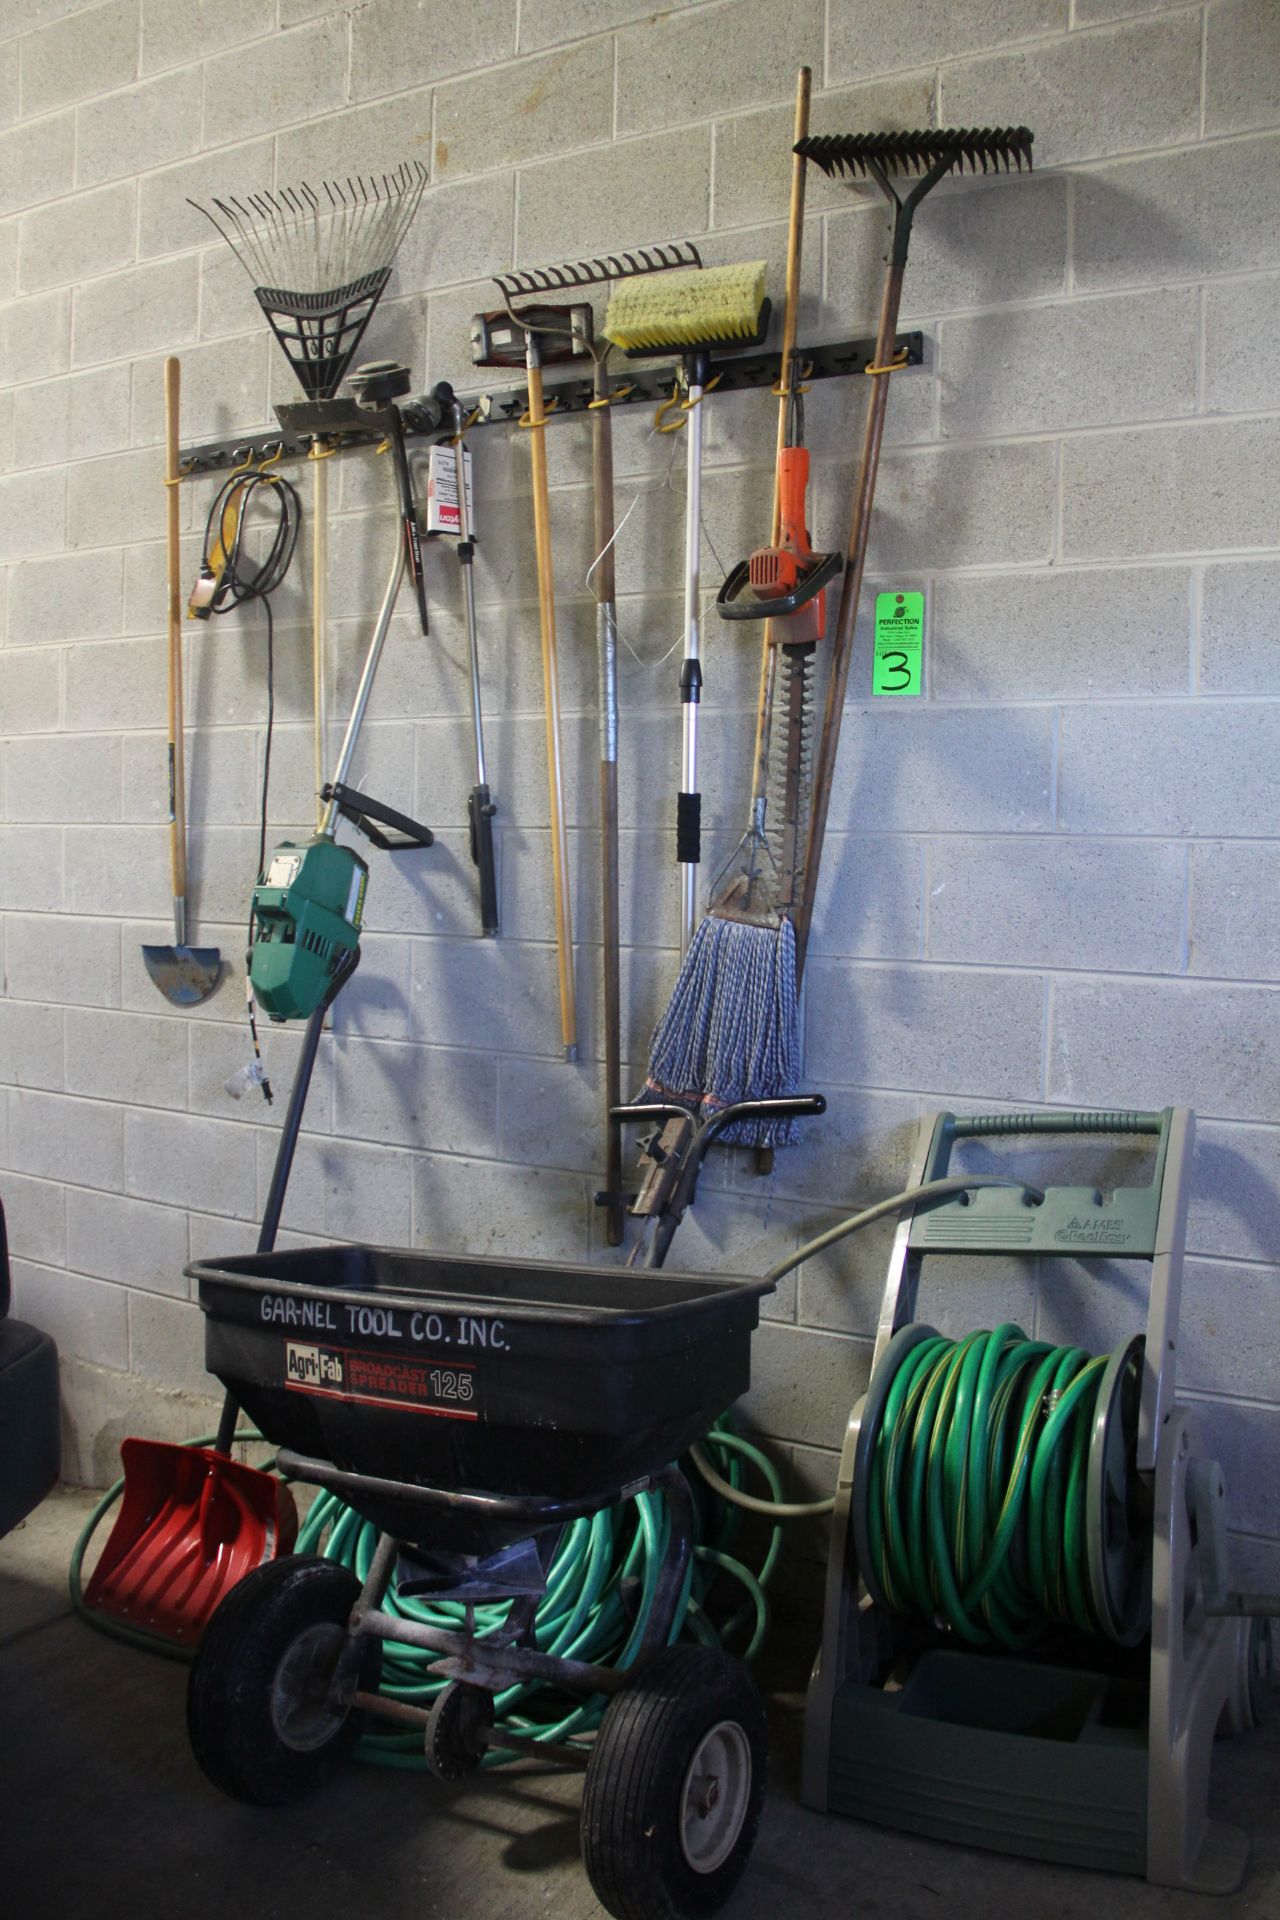 Lot of Yard Tools Including Hose and Reel, Salt Spreader, Trimmer, Edger